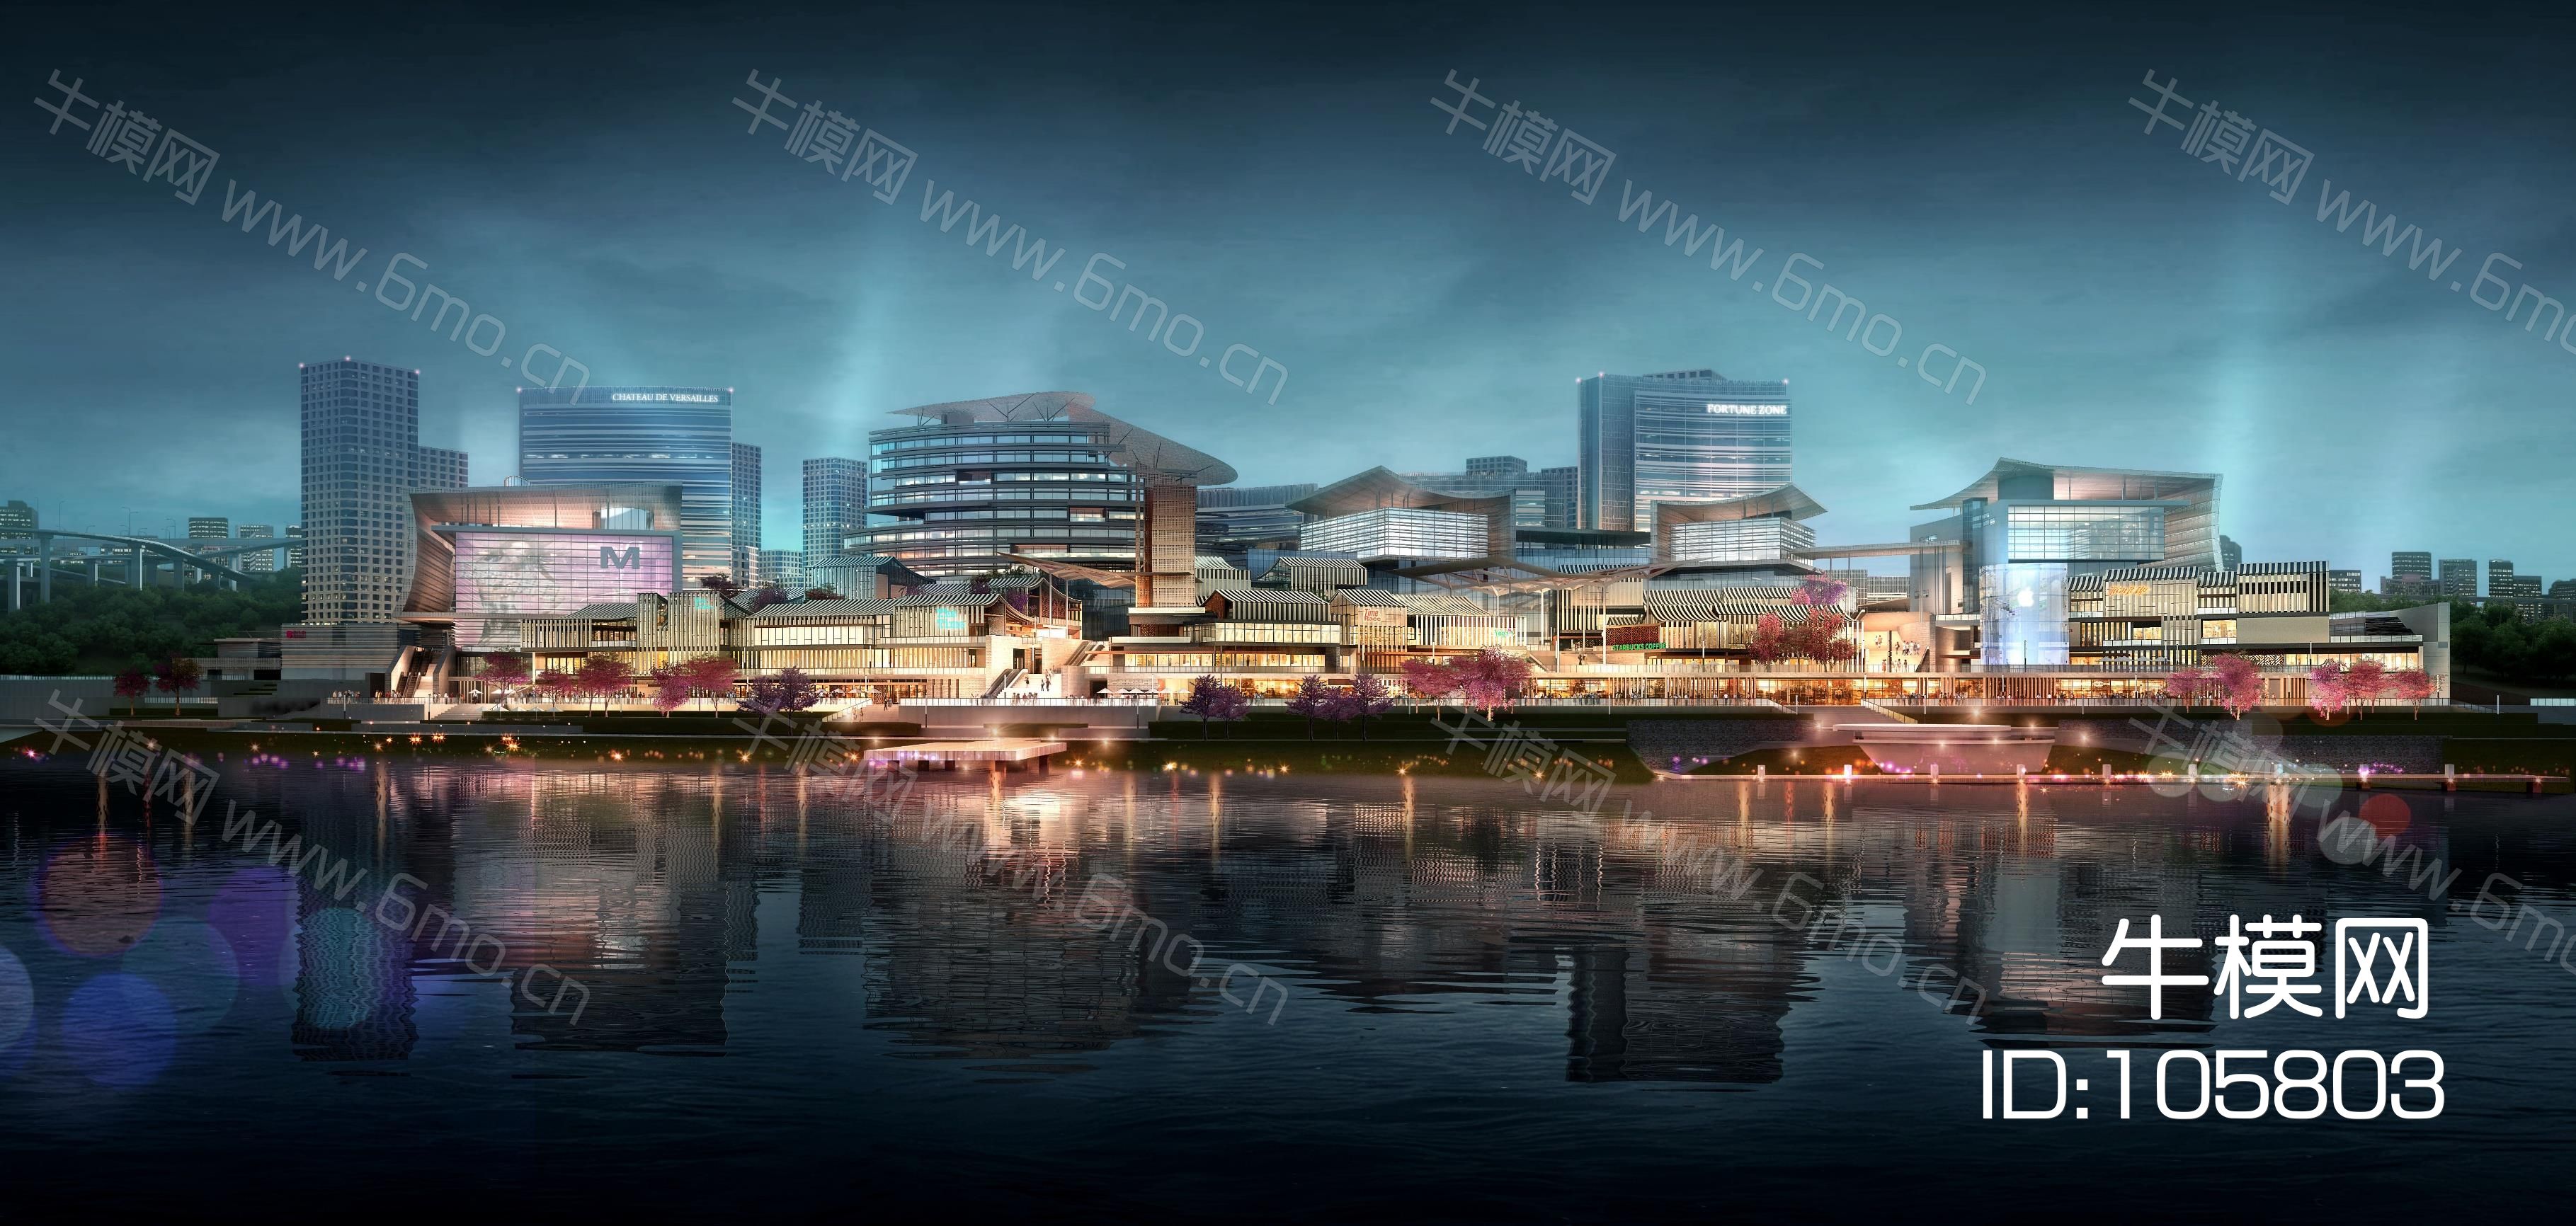 重庆巴南区巴滨路商业项目概念设计天华